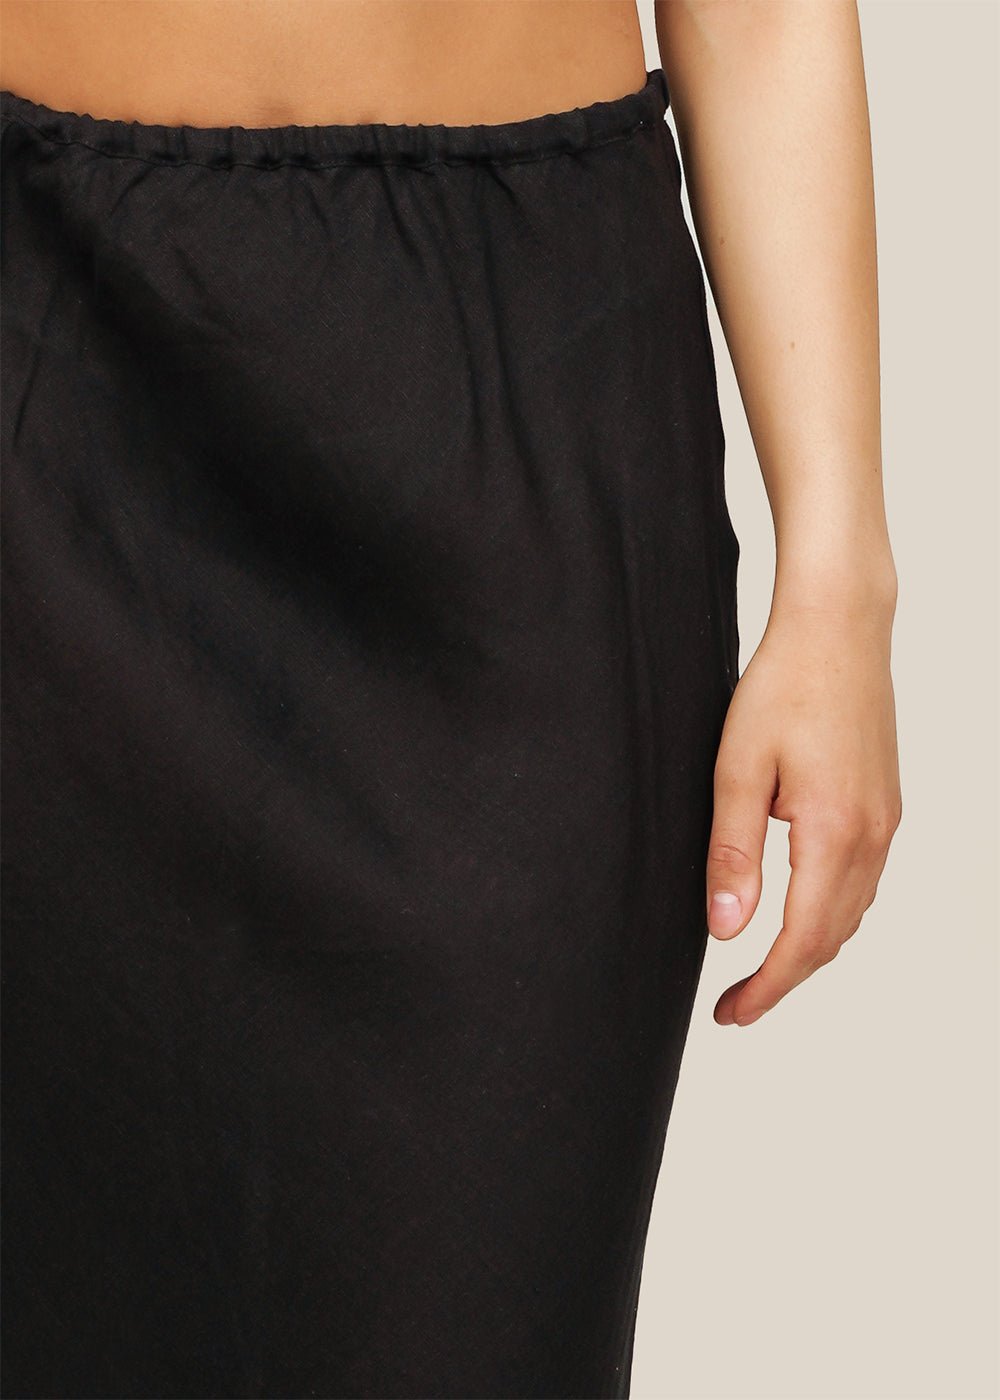 Baserange Black Dydine Skirt - New Classics Studios Sustainable Ethical Fashion Canada